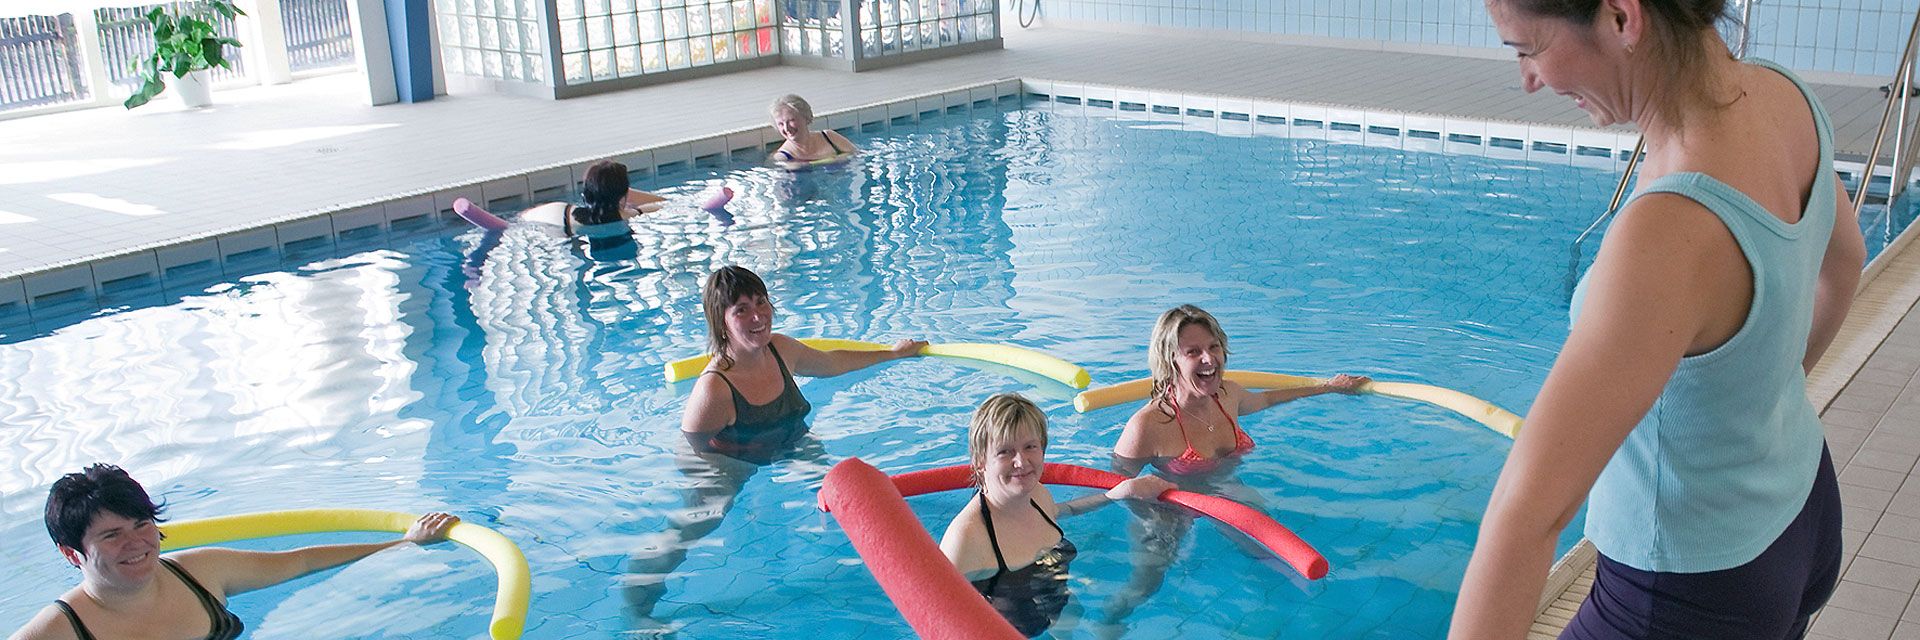 Foto: Mehrere Frauen befinden sich mit Schwimmnudeln in einem Schwimmbecken und blicken die Kursleiterin an. Sie haben sichtbar Spaß zusammen.